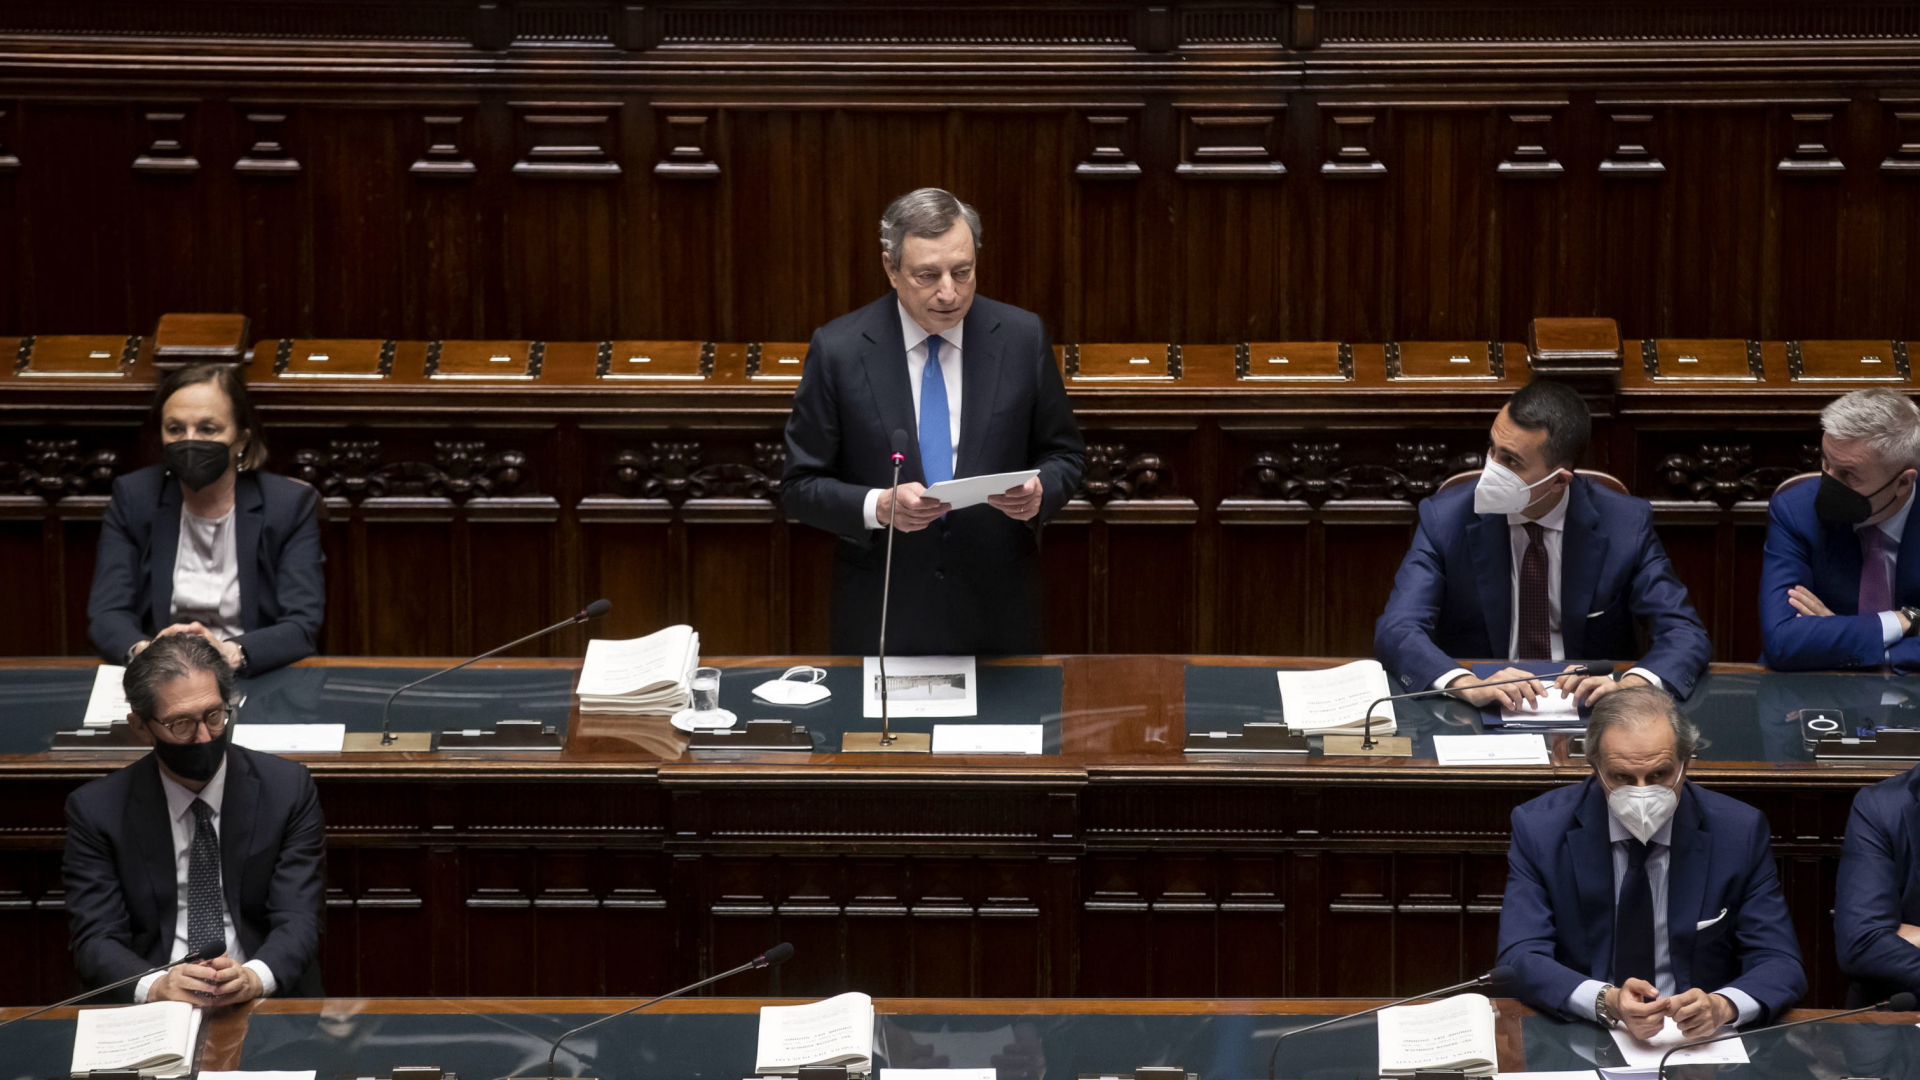 Mario Draghi spricht im italienischen Parlament